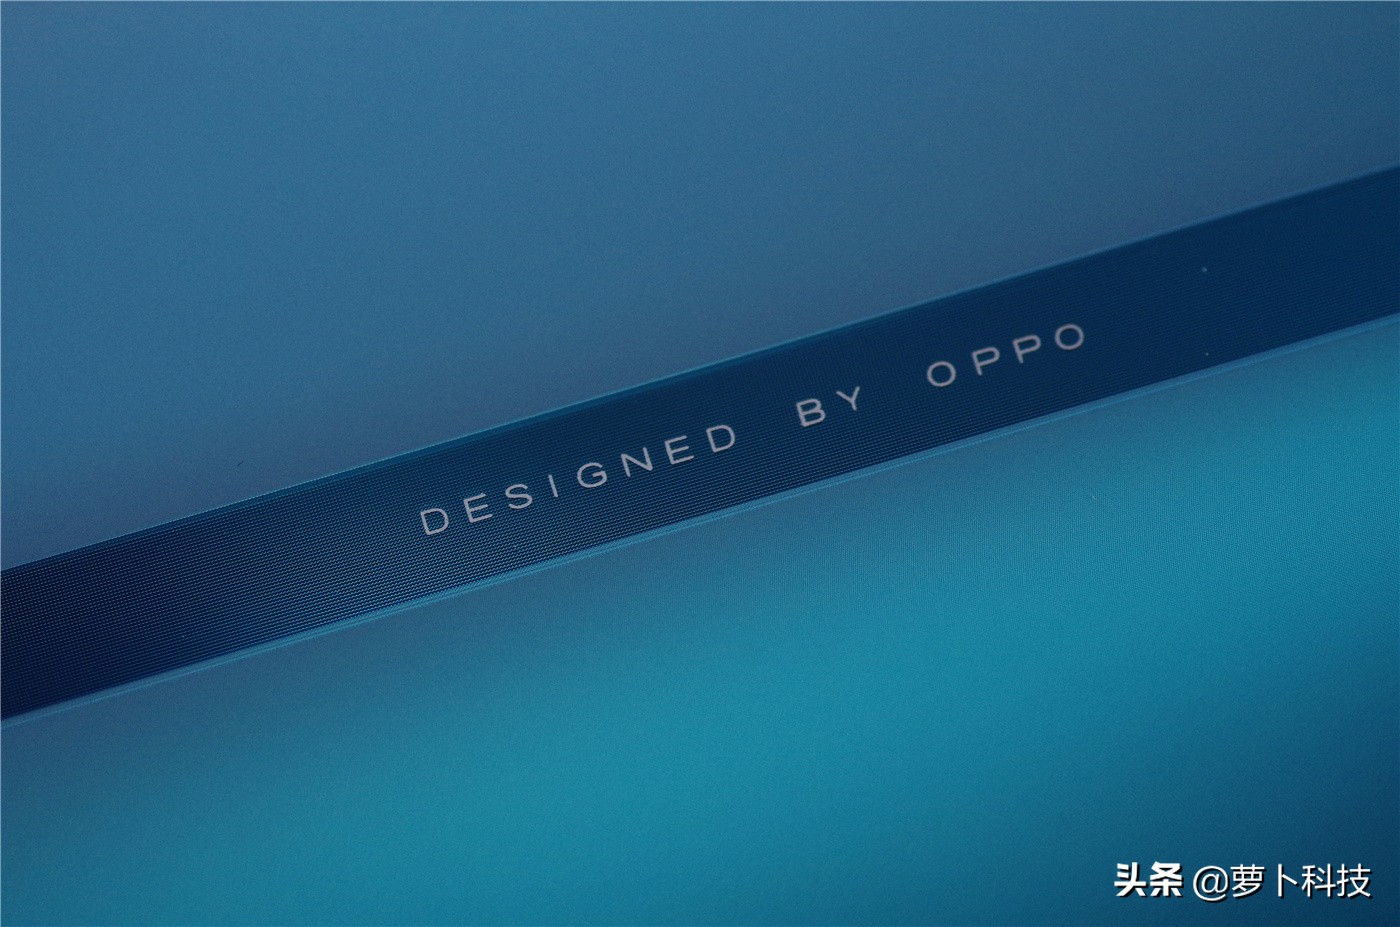 OPPO Reno全方位评测：不凸起美学设计的经典之作